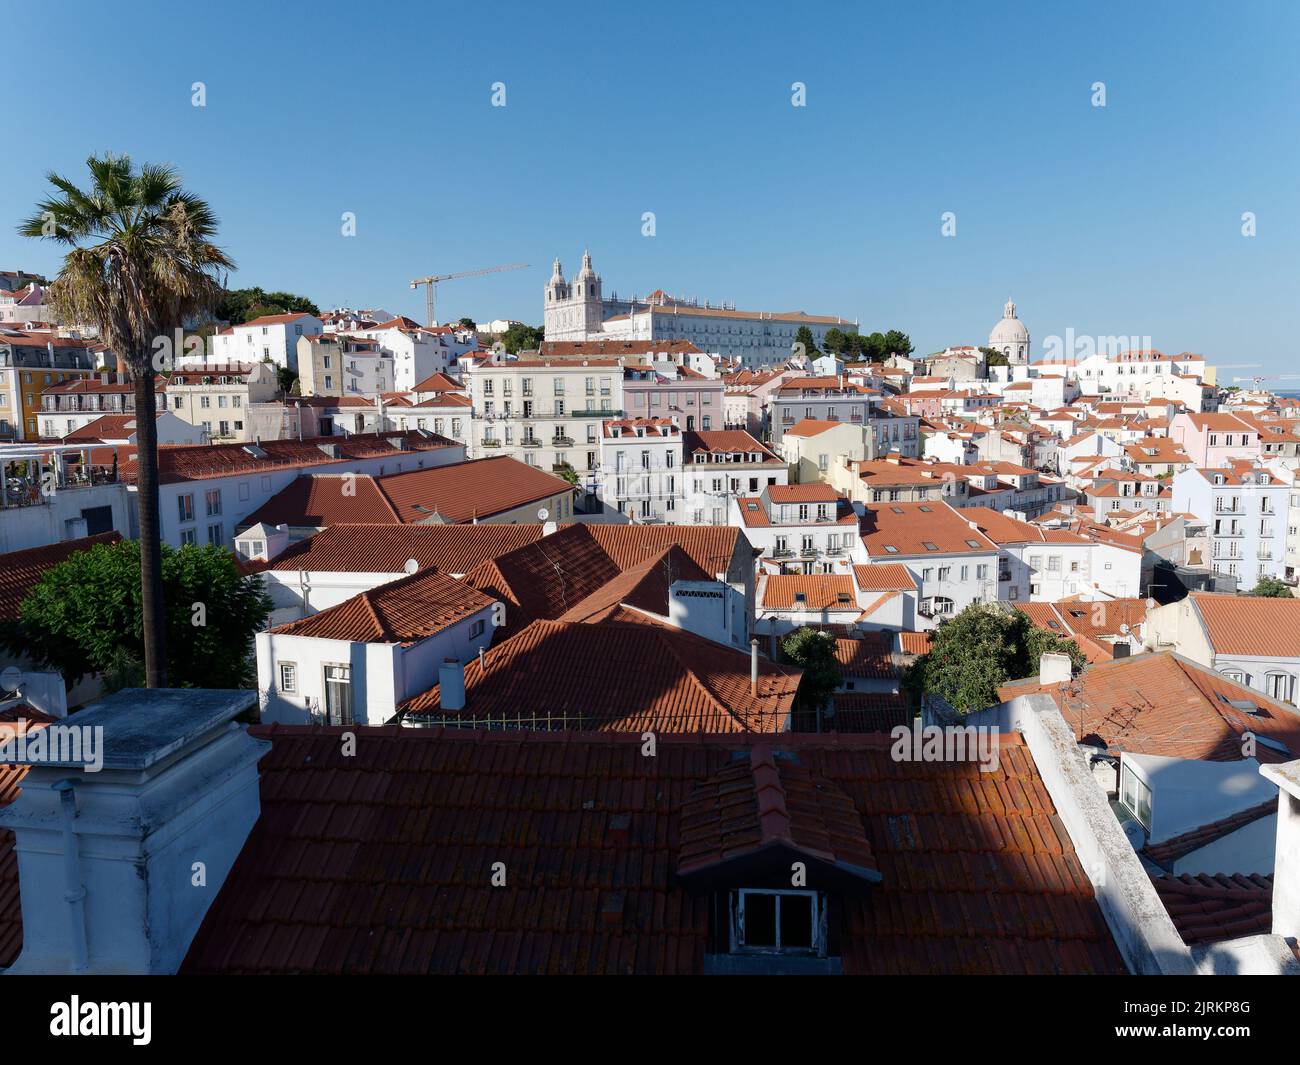 Vista dal punto panoramico Miradouro das Portas do Sol a Lisbona, Portogallo, in una serata estiva. Monastero di São Vicente de Fora top. Foto Stock